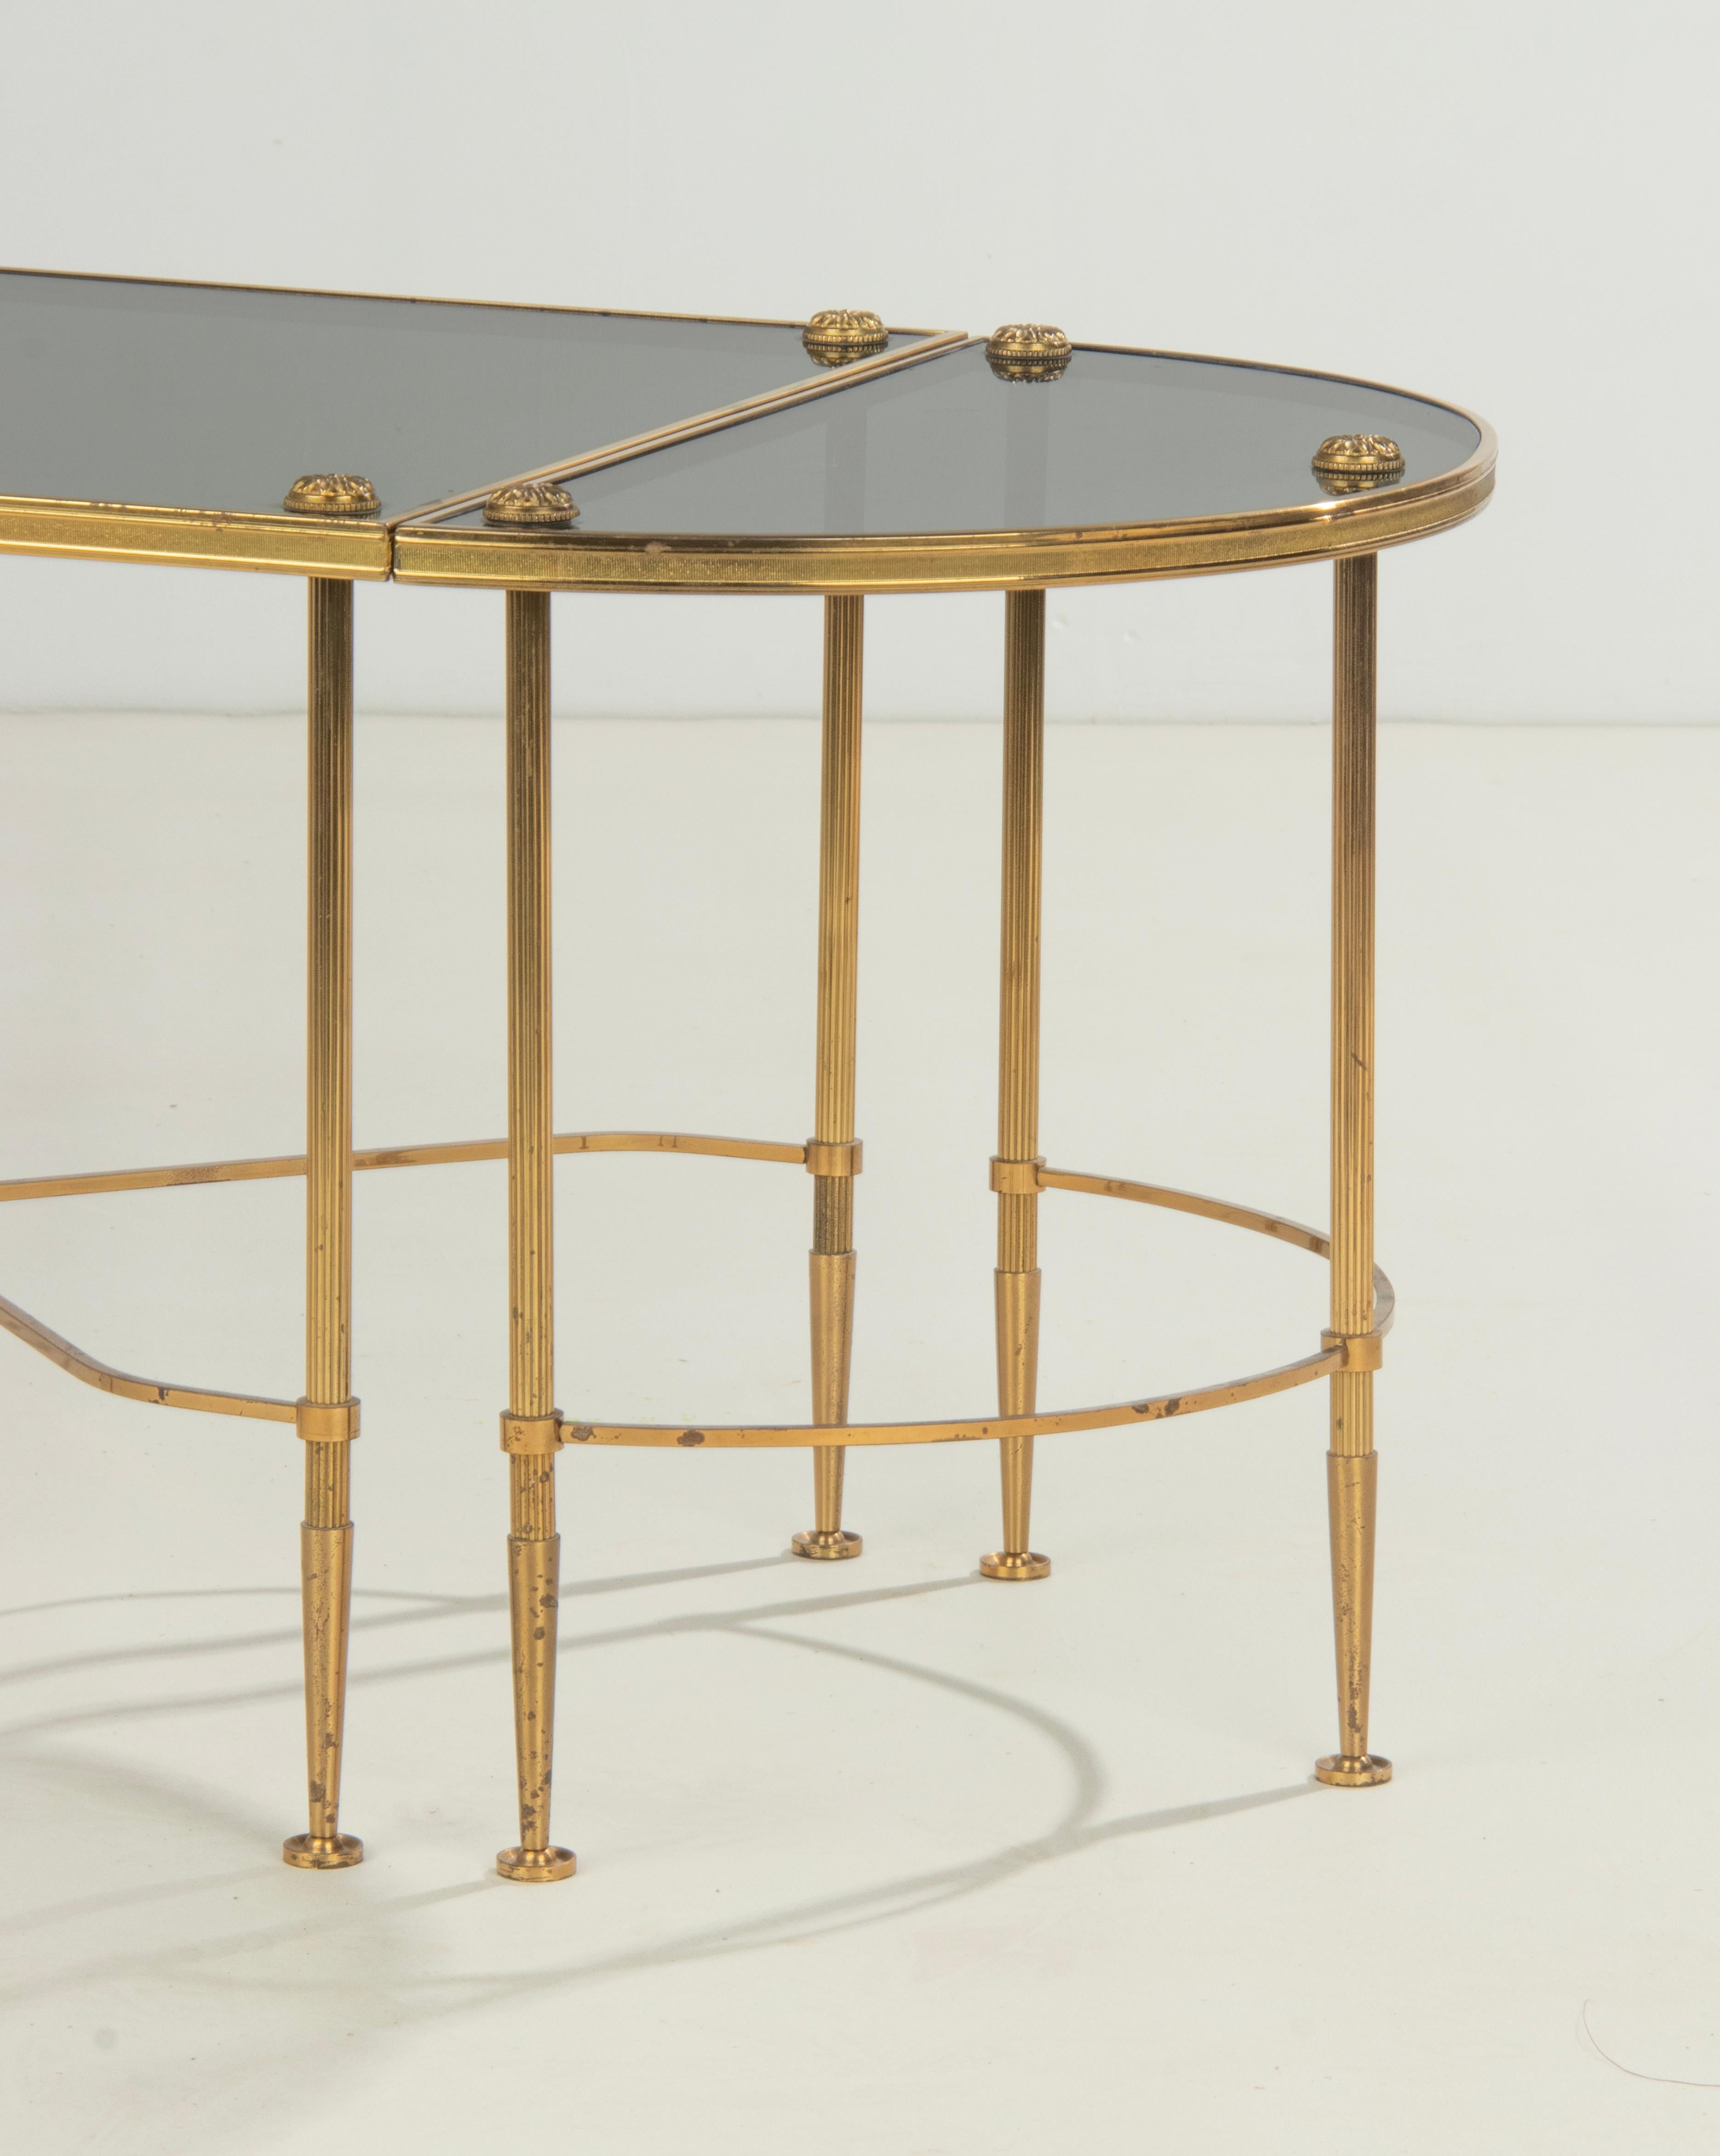 Ein eleganter Couchtisch im Stil von Maison Baguès, aus poliertem, messingfarbenem Metall, auf kannelierten Beinen. Drei modulare Elemente: ein zentraler, rechteckiger Tisch mit einer X-Lehne, begleitet von zwei Halbmonden (demi lune) an beiden